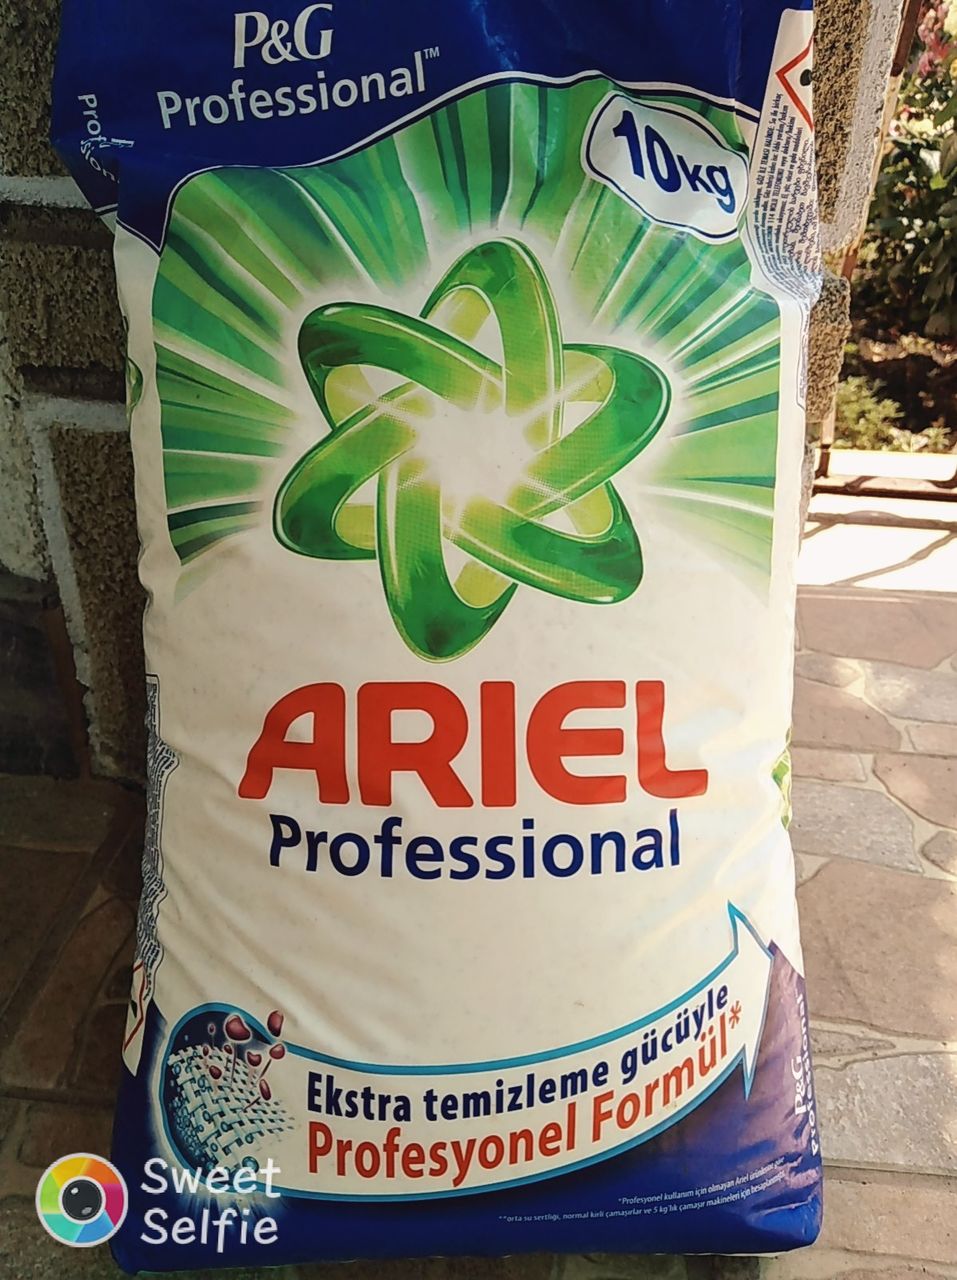 Ариэль 15 кг цена купить. Порошок Ариэль 10 кг. Порошок Ариель 10кг Турция. Порошок Ariel profesyonal formul 10 кг турецкий.